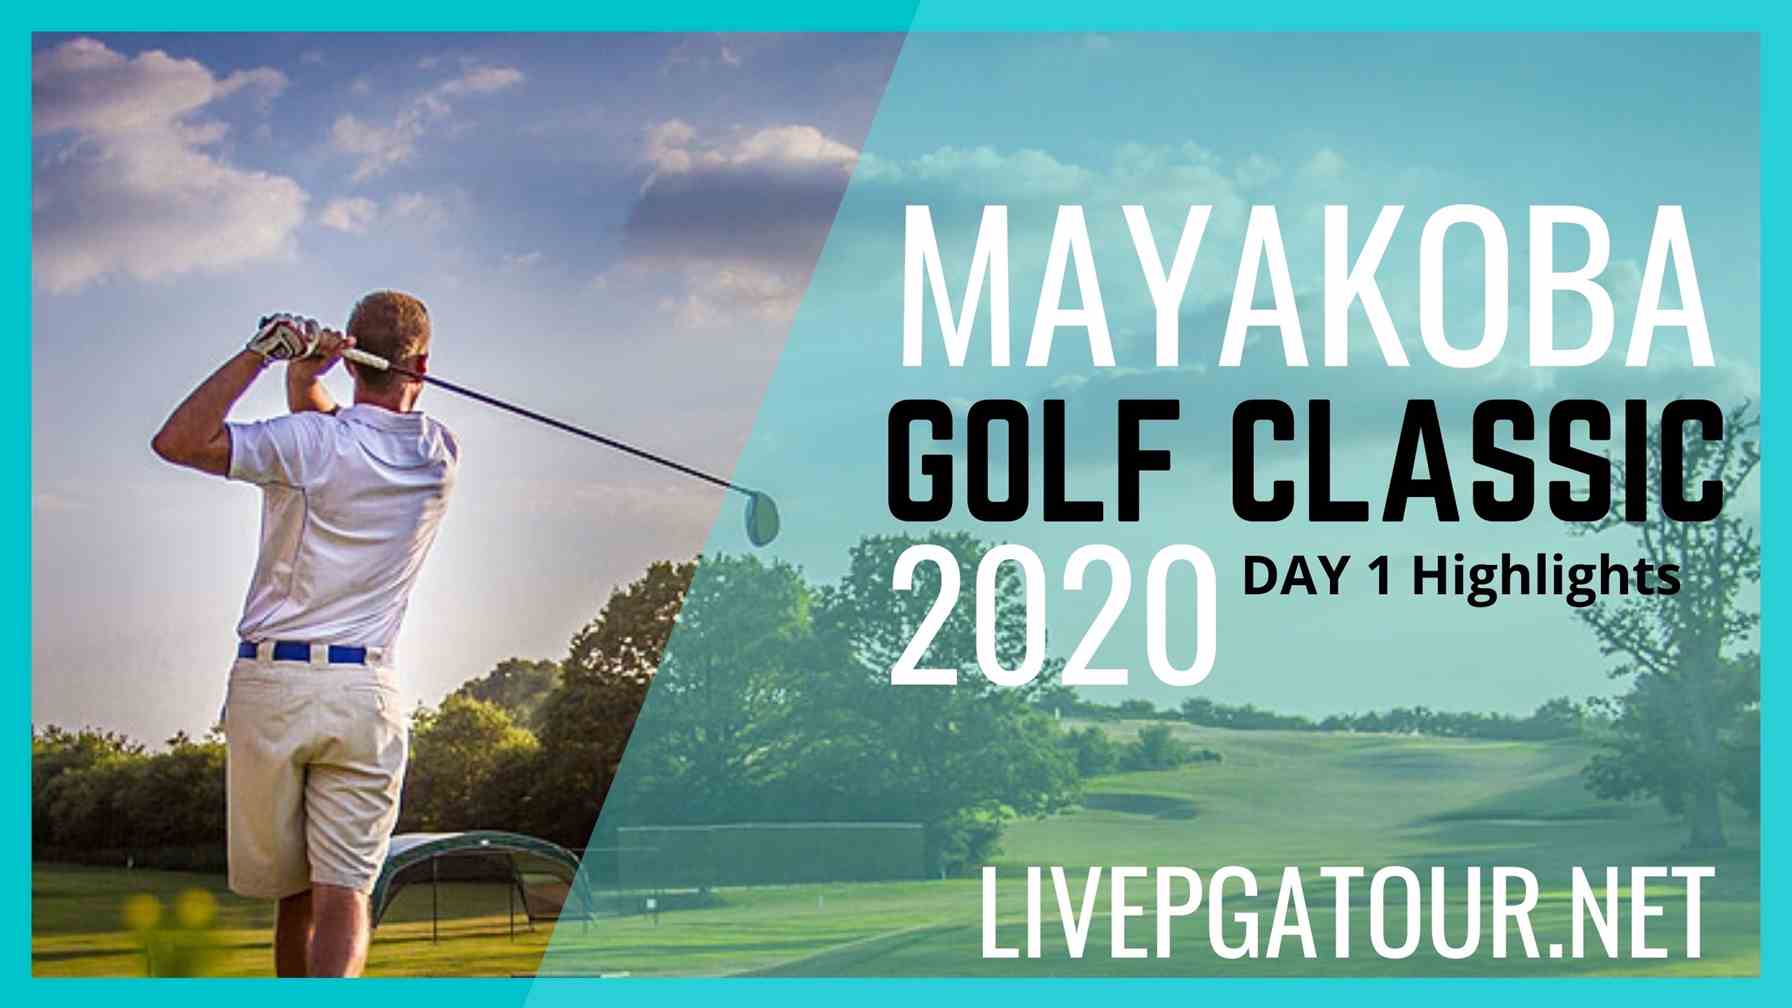 Mayakoba Golf Classic PGA Tour Day 1 Highlights 2020